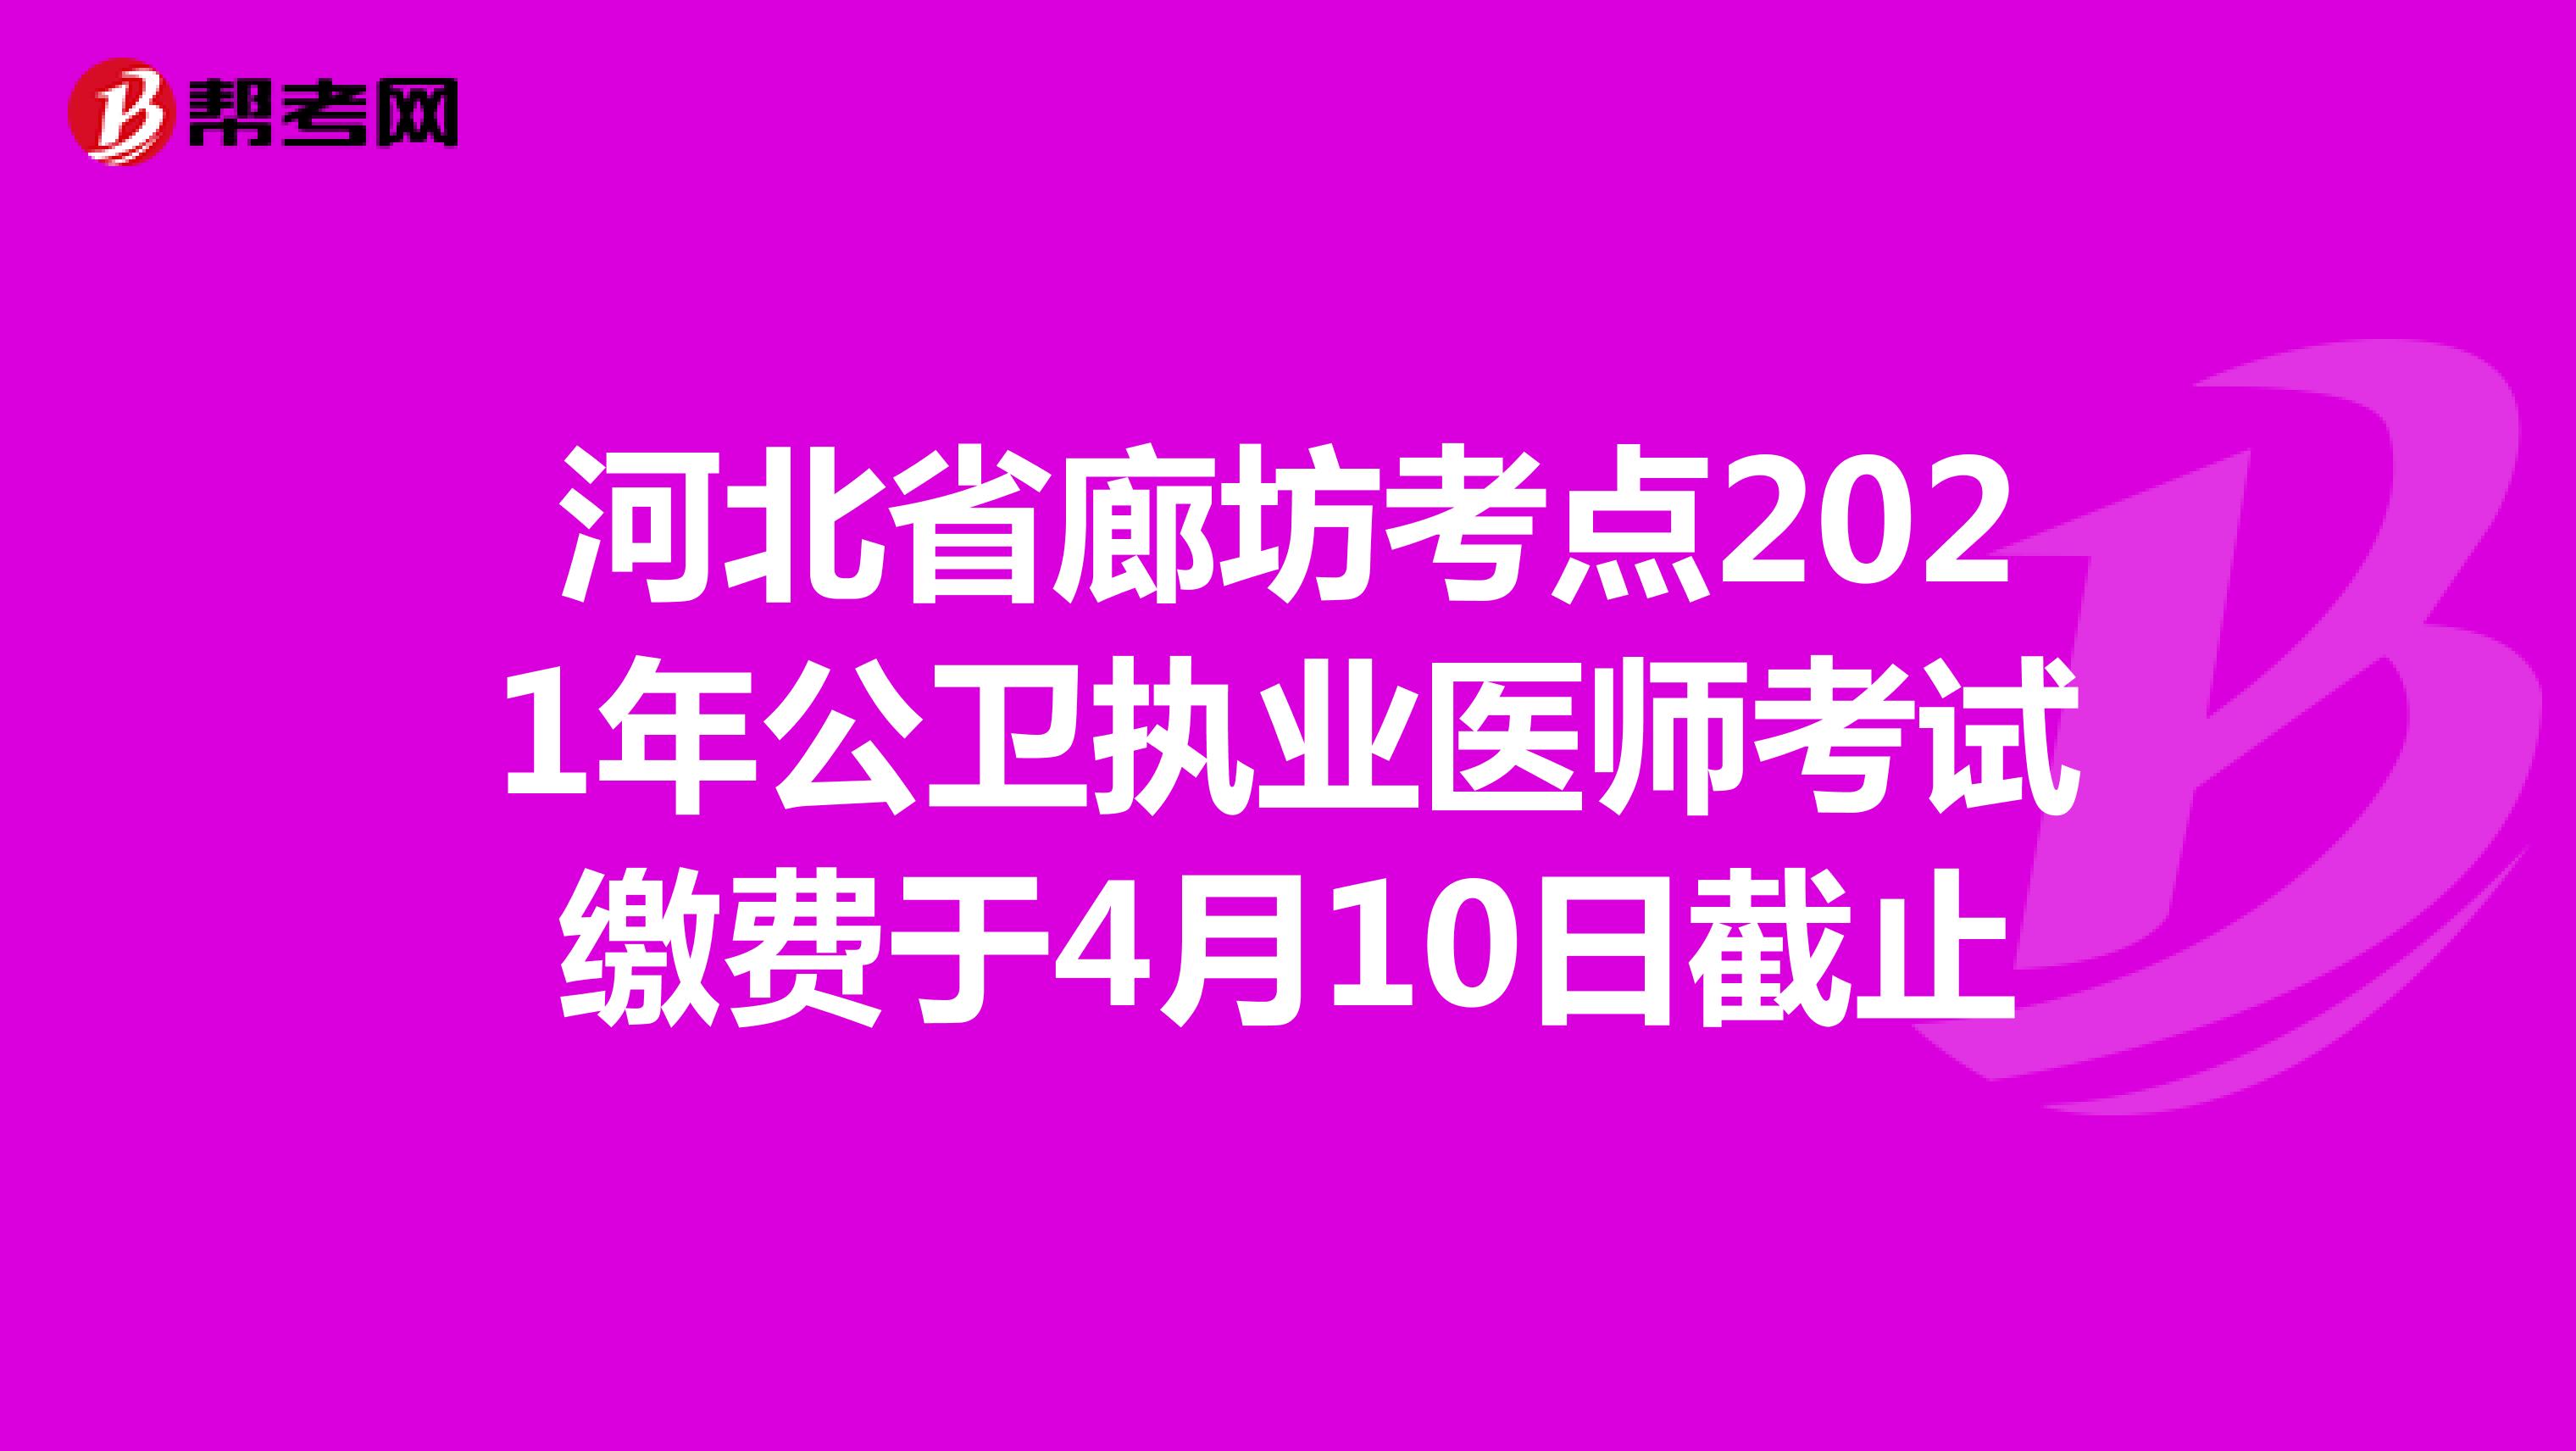 河北省廊坊考点2021年公卫执业医师考试缴费于4月10日截止